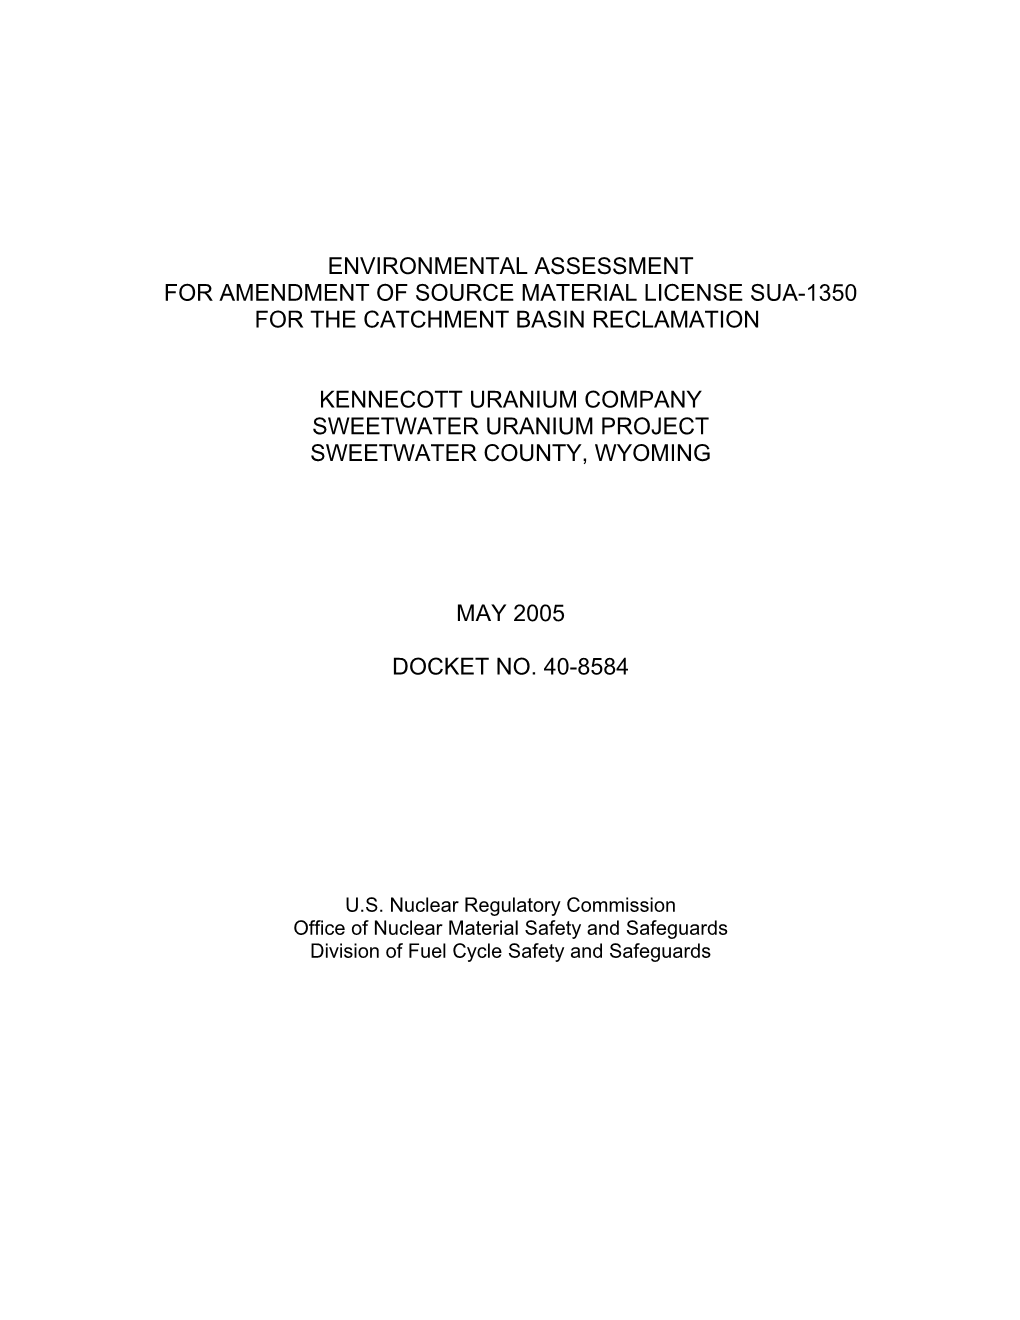 Environmental Assessement for Amendment of Source Materials